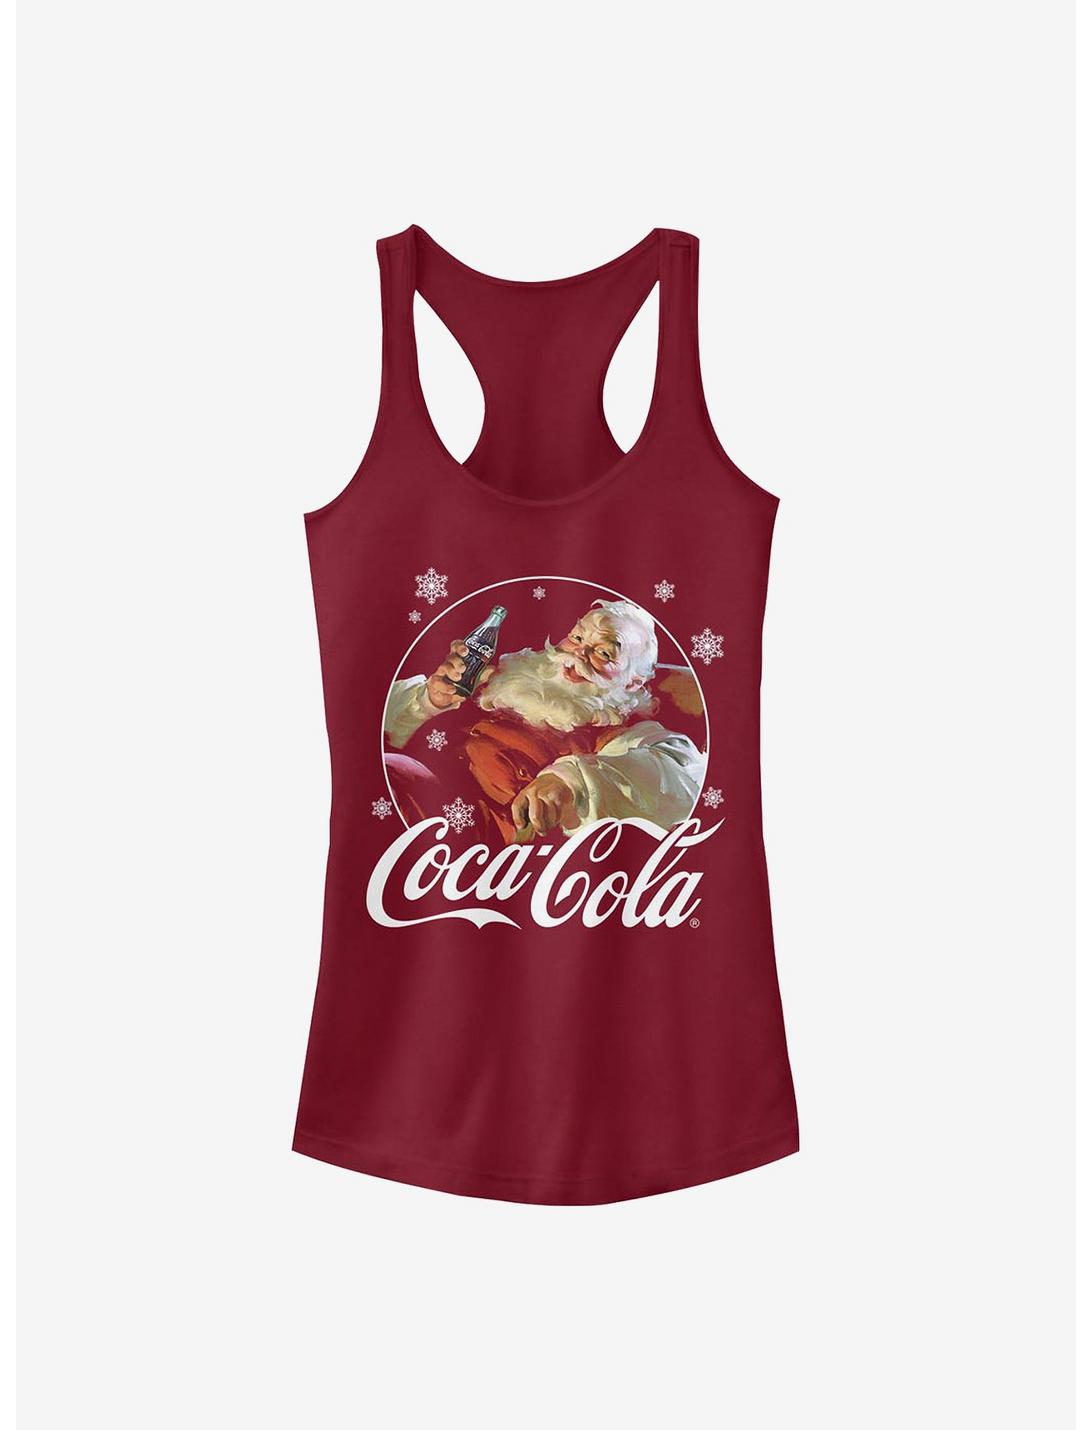 Coke Coca-Cola Santa Girls Tank, SCARLET, hi-res